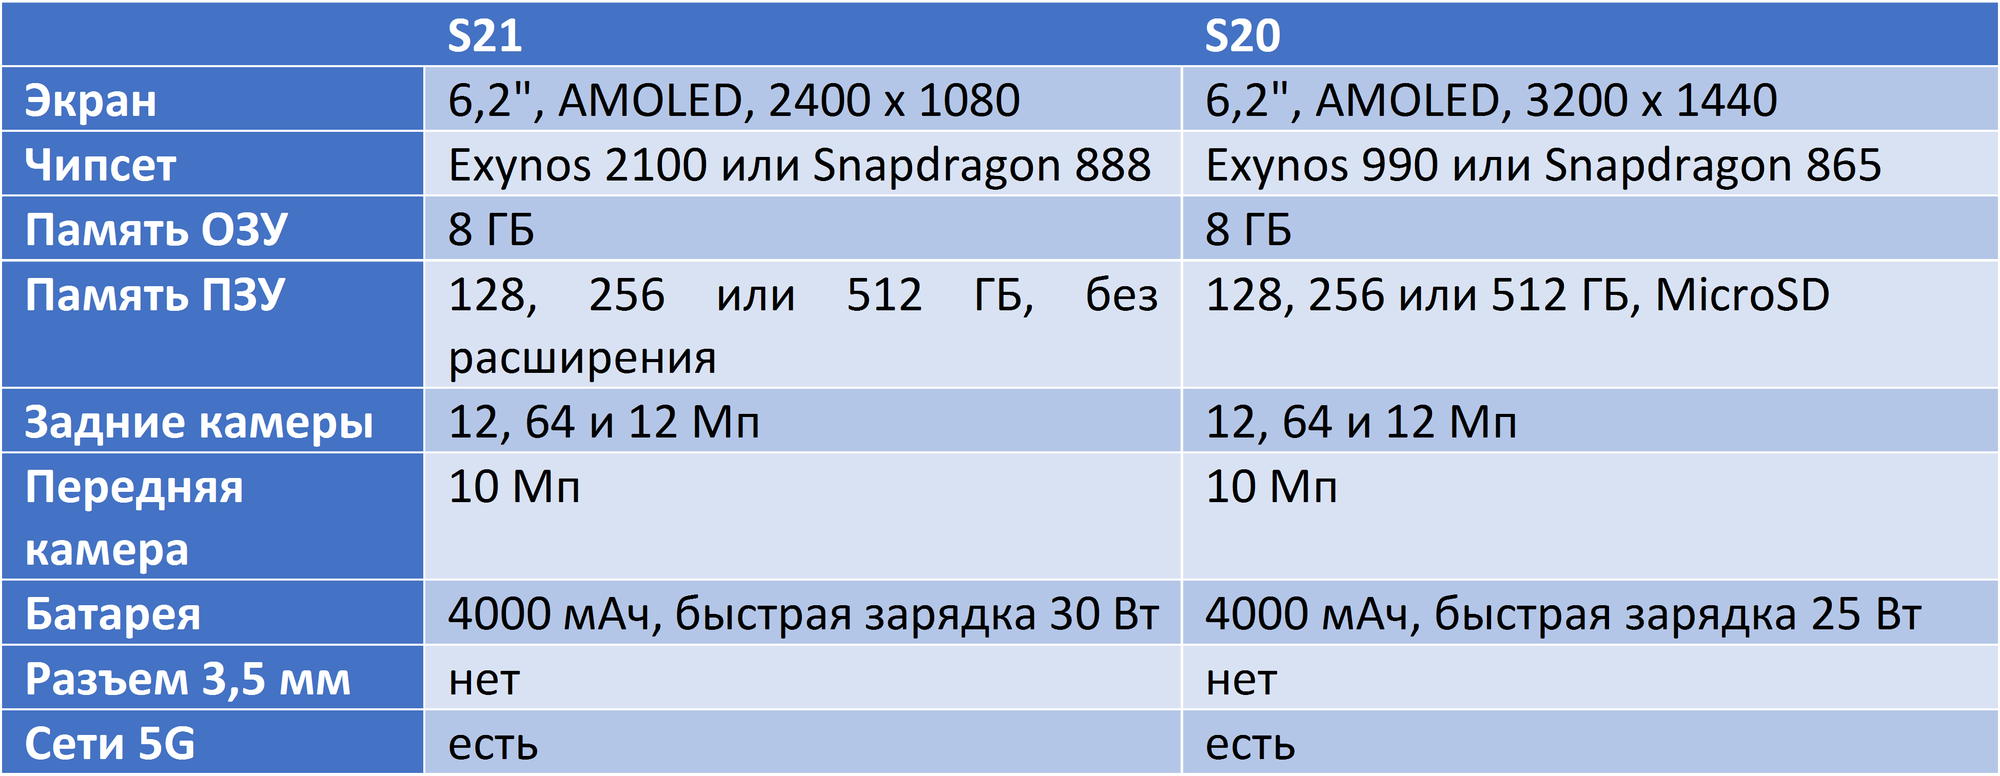 Технические характеристики Самсунг С20 и С21